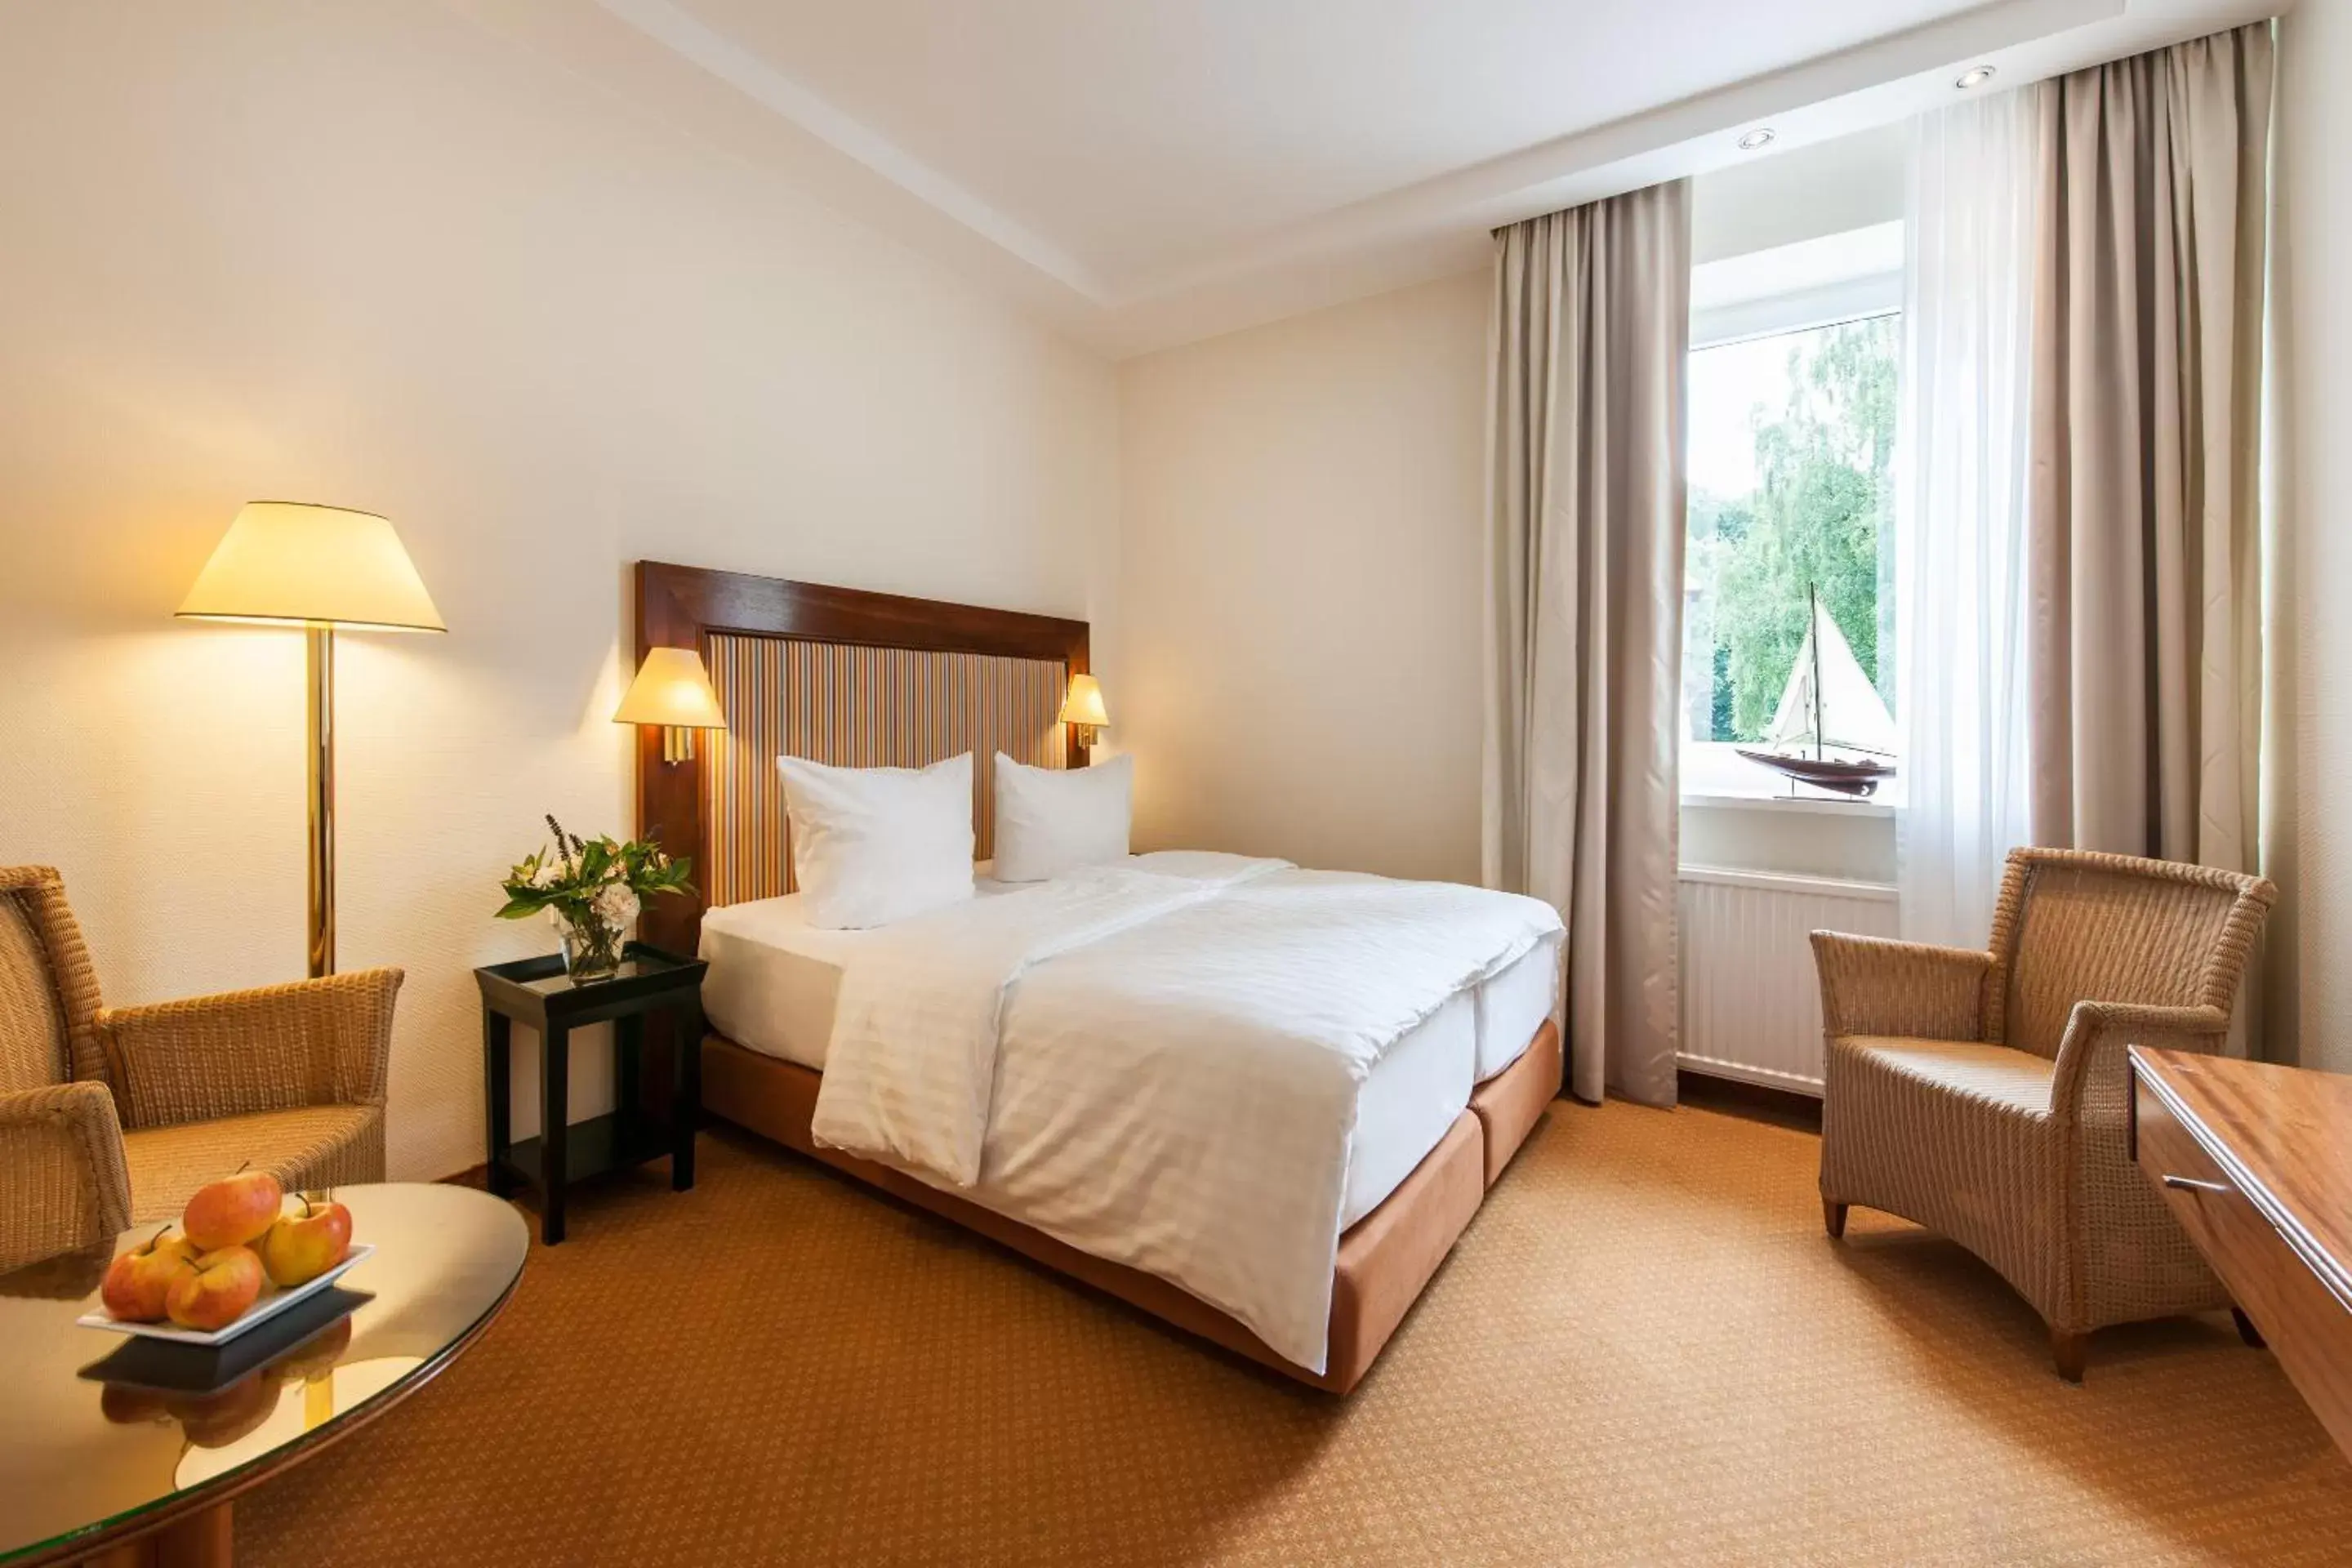 Standard Double Room in Hotel Birke, Ringhotel Kiel